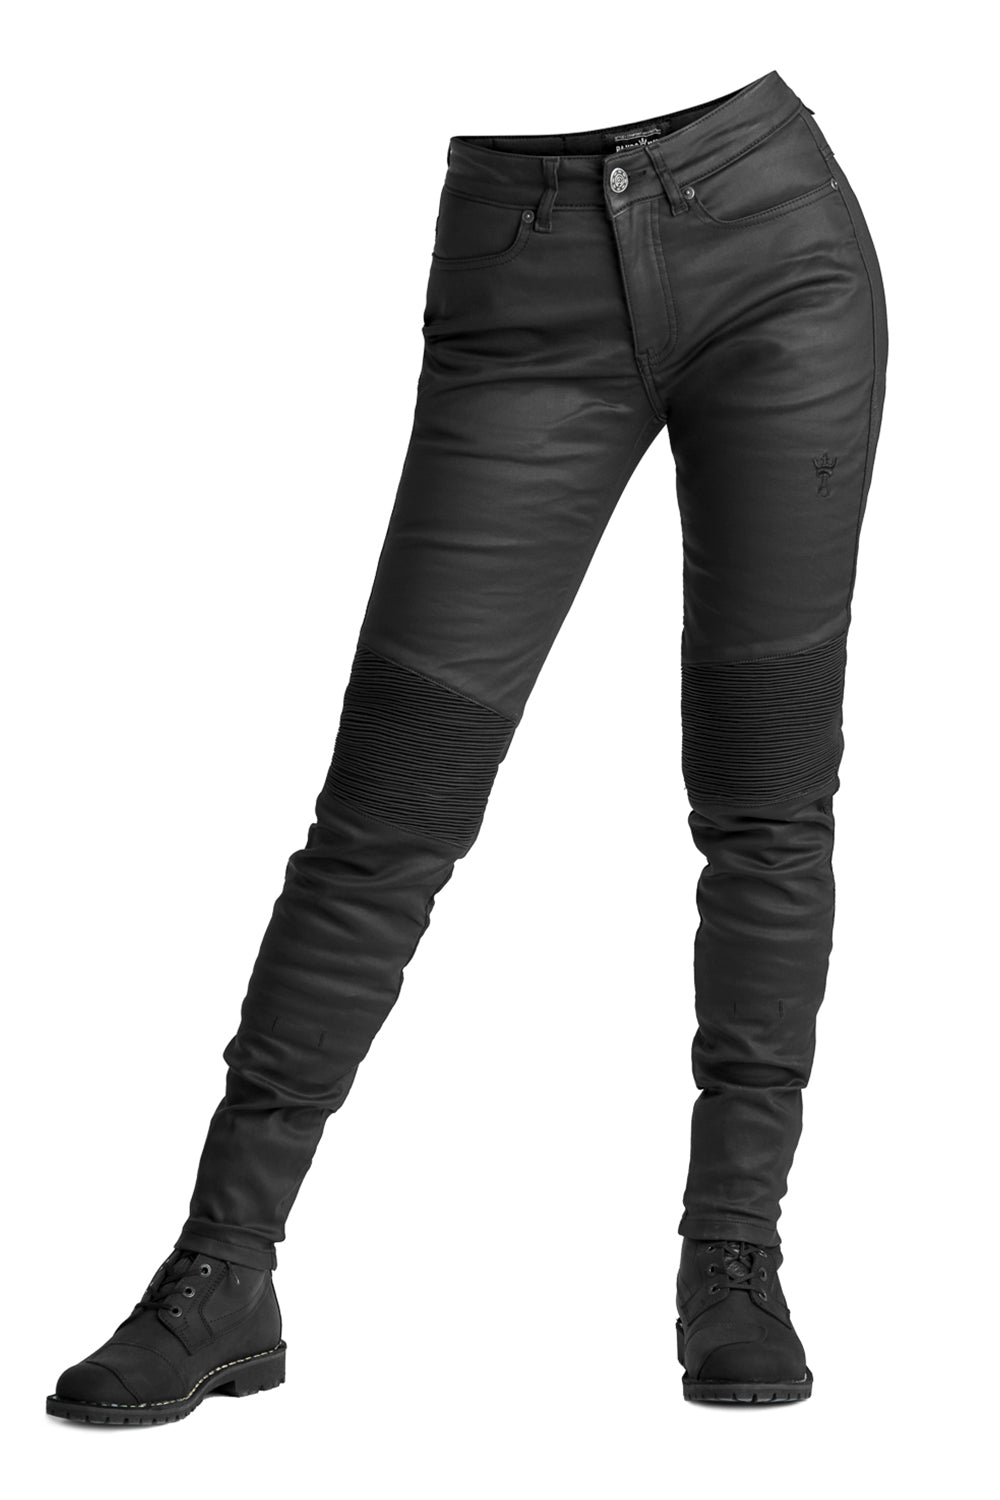 REV'IT! Ellison Lady SK Black length 32 - Women's motorcycle jeans